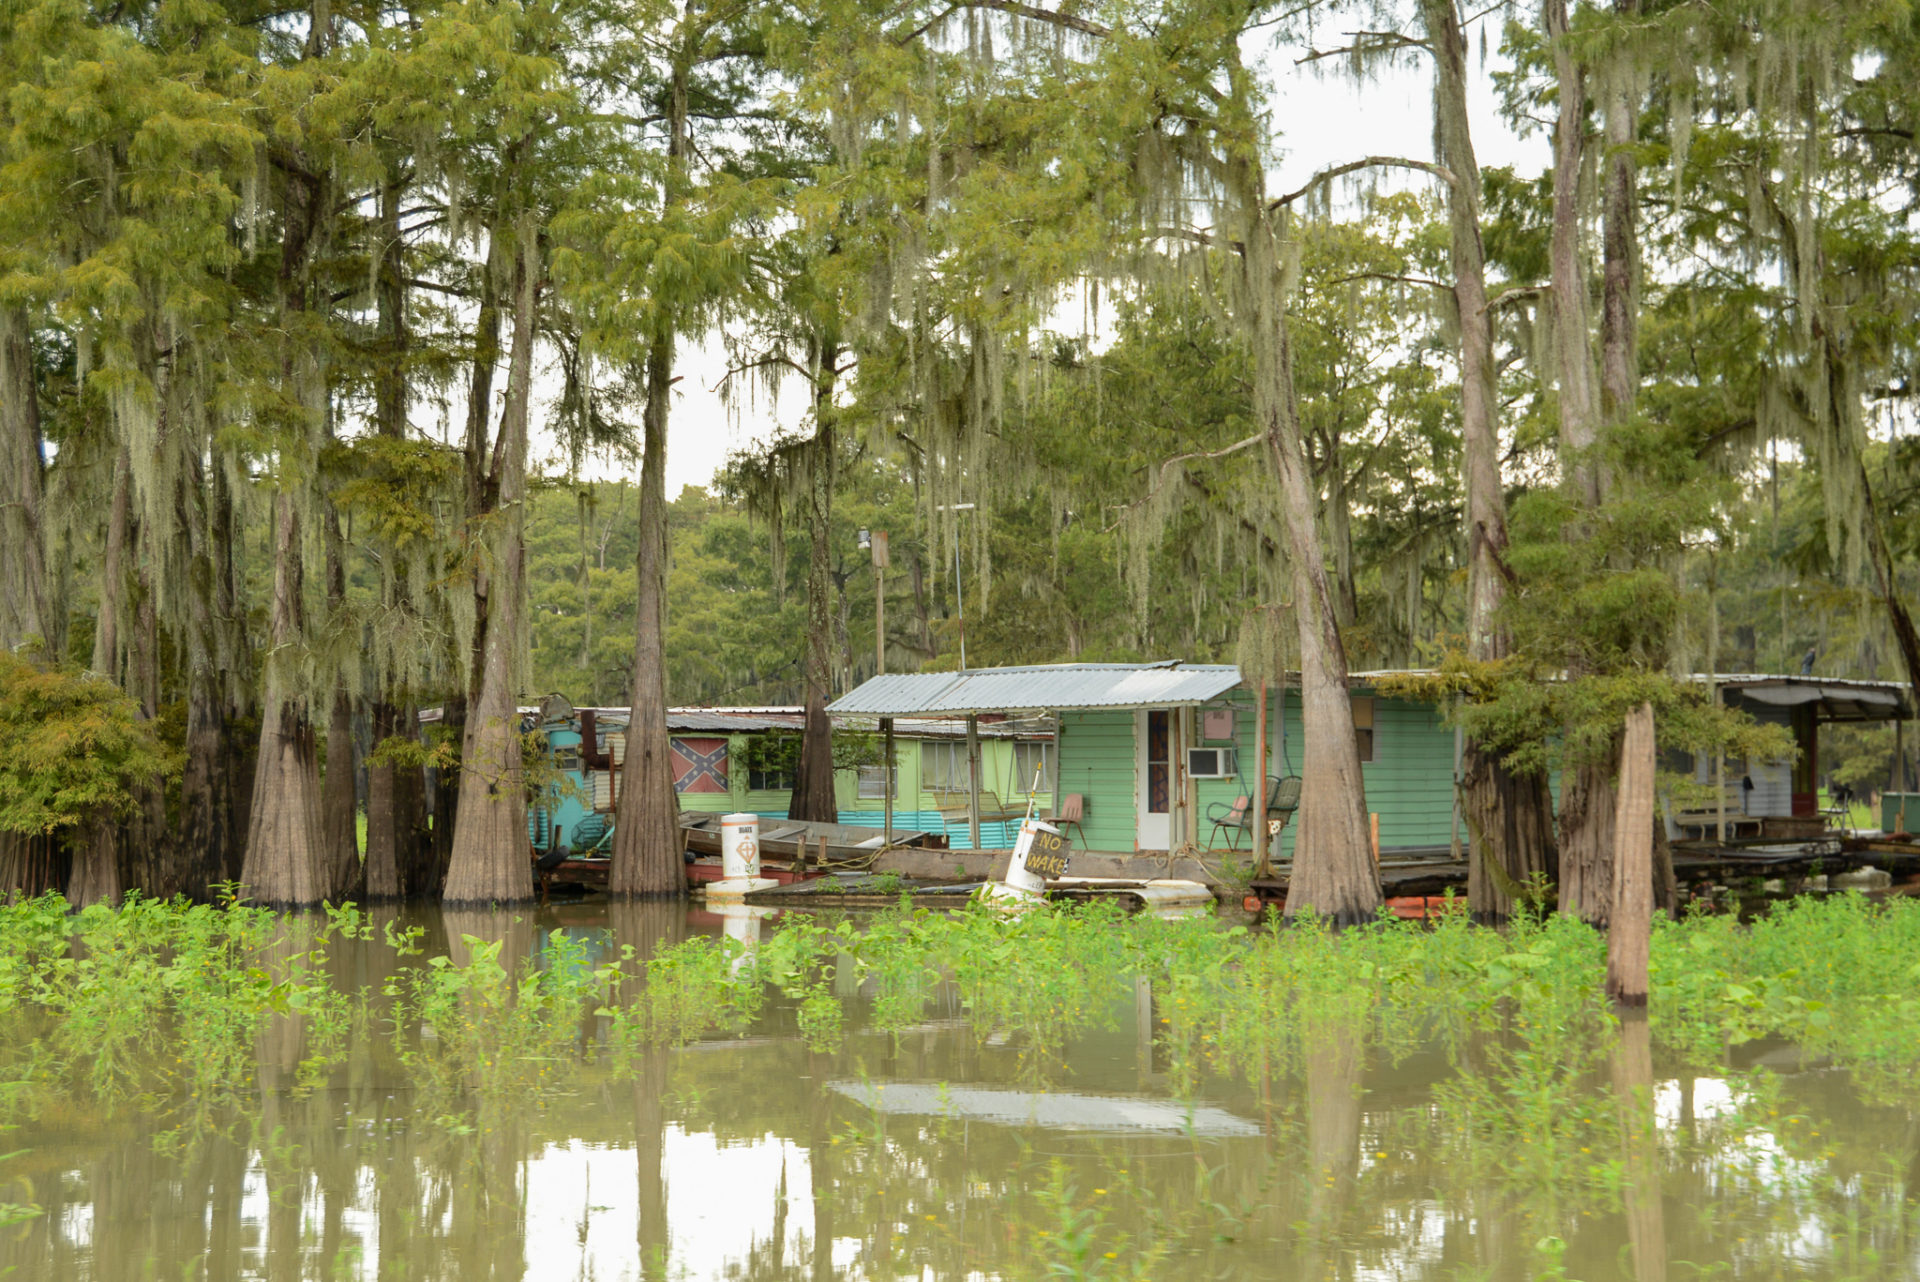 Wohnhütten mit Südstaaten-Flagge in den Bayous von Louisiana